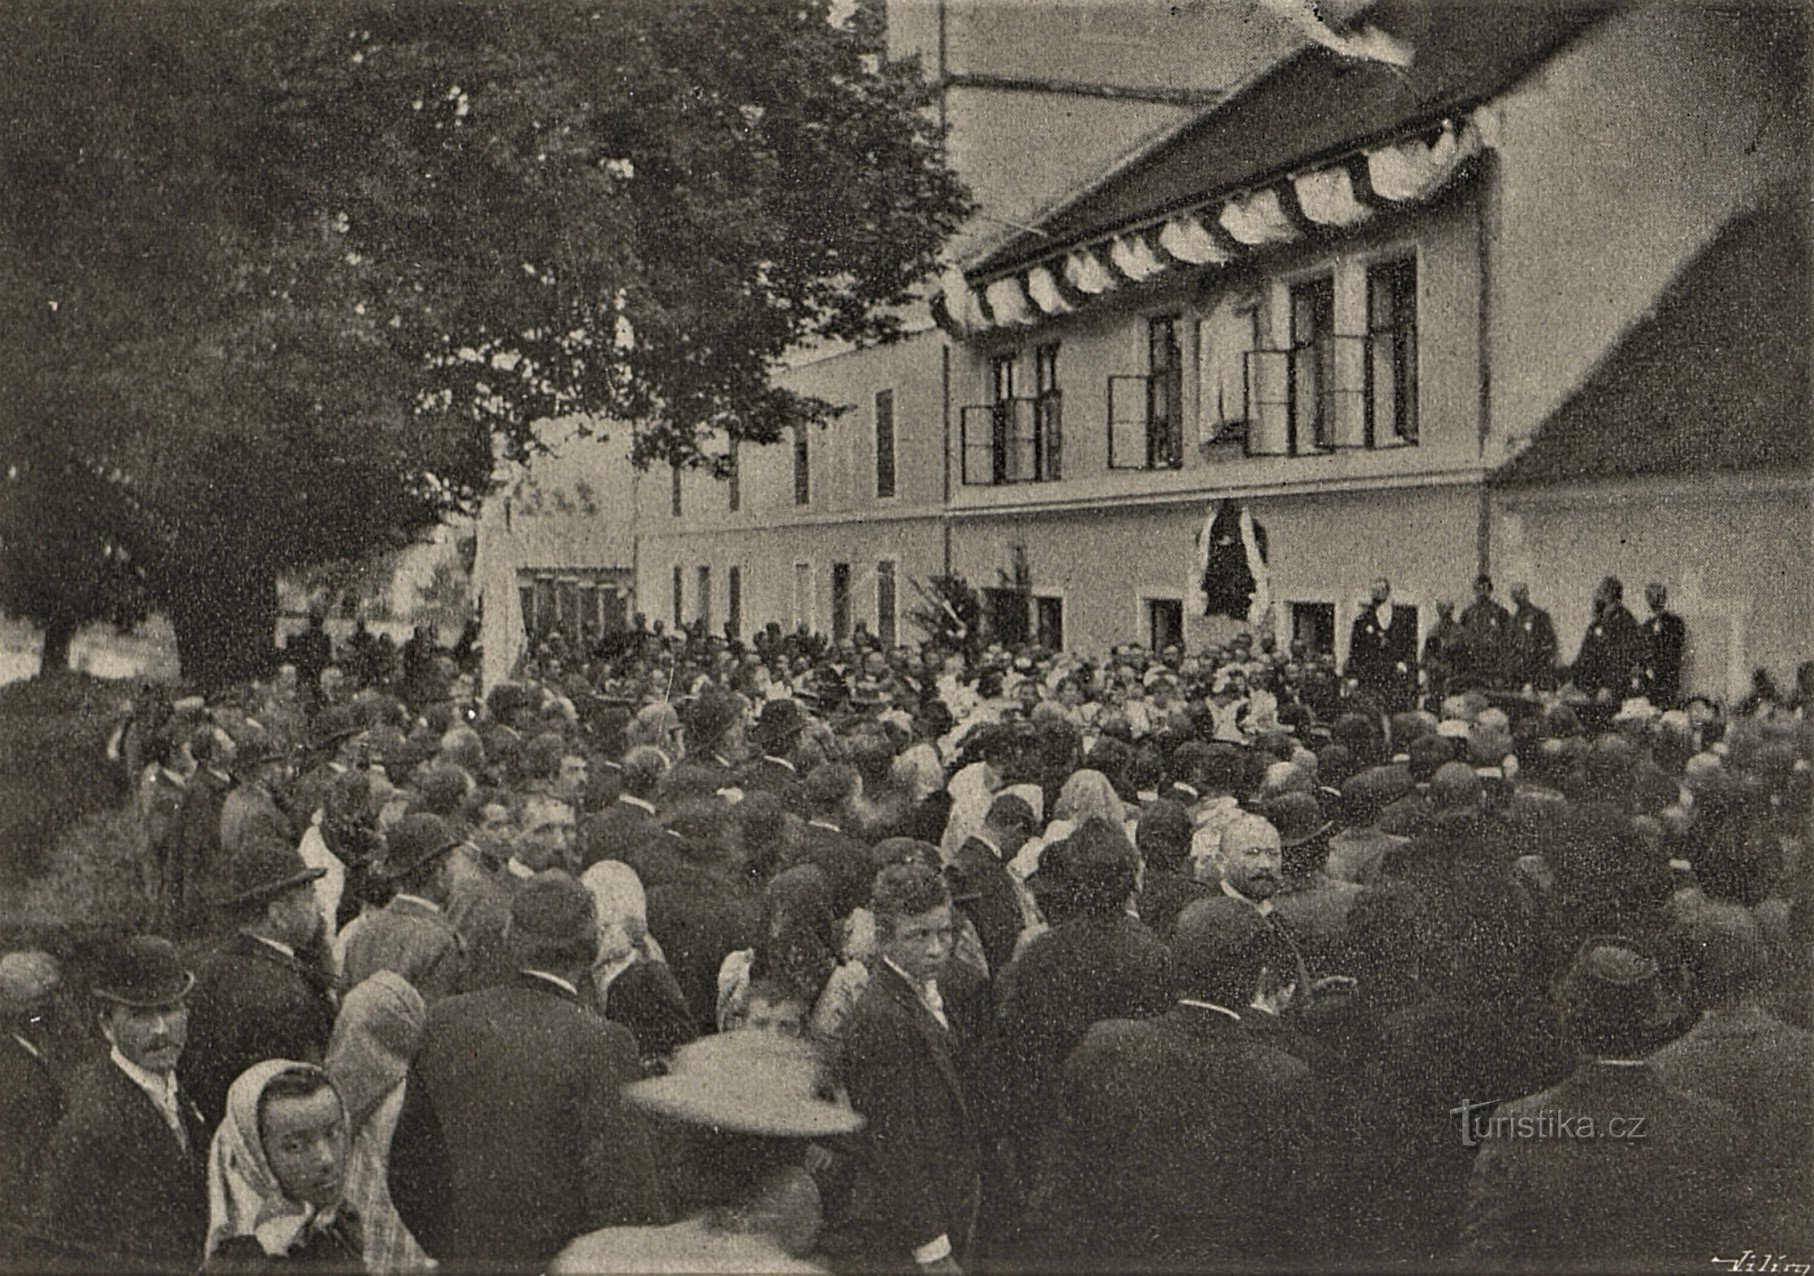 Ceremoniell avtäckning av minnestavlan JUDr. till Julius Grégro (2.10.1898 oktober XNUMX))